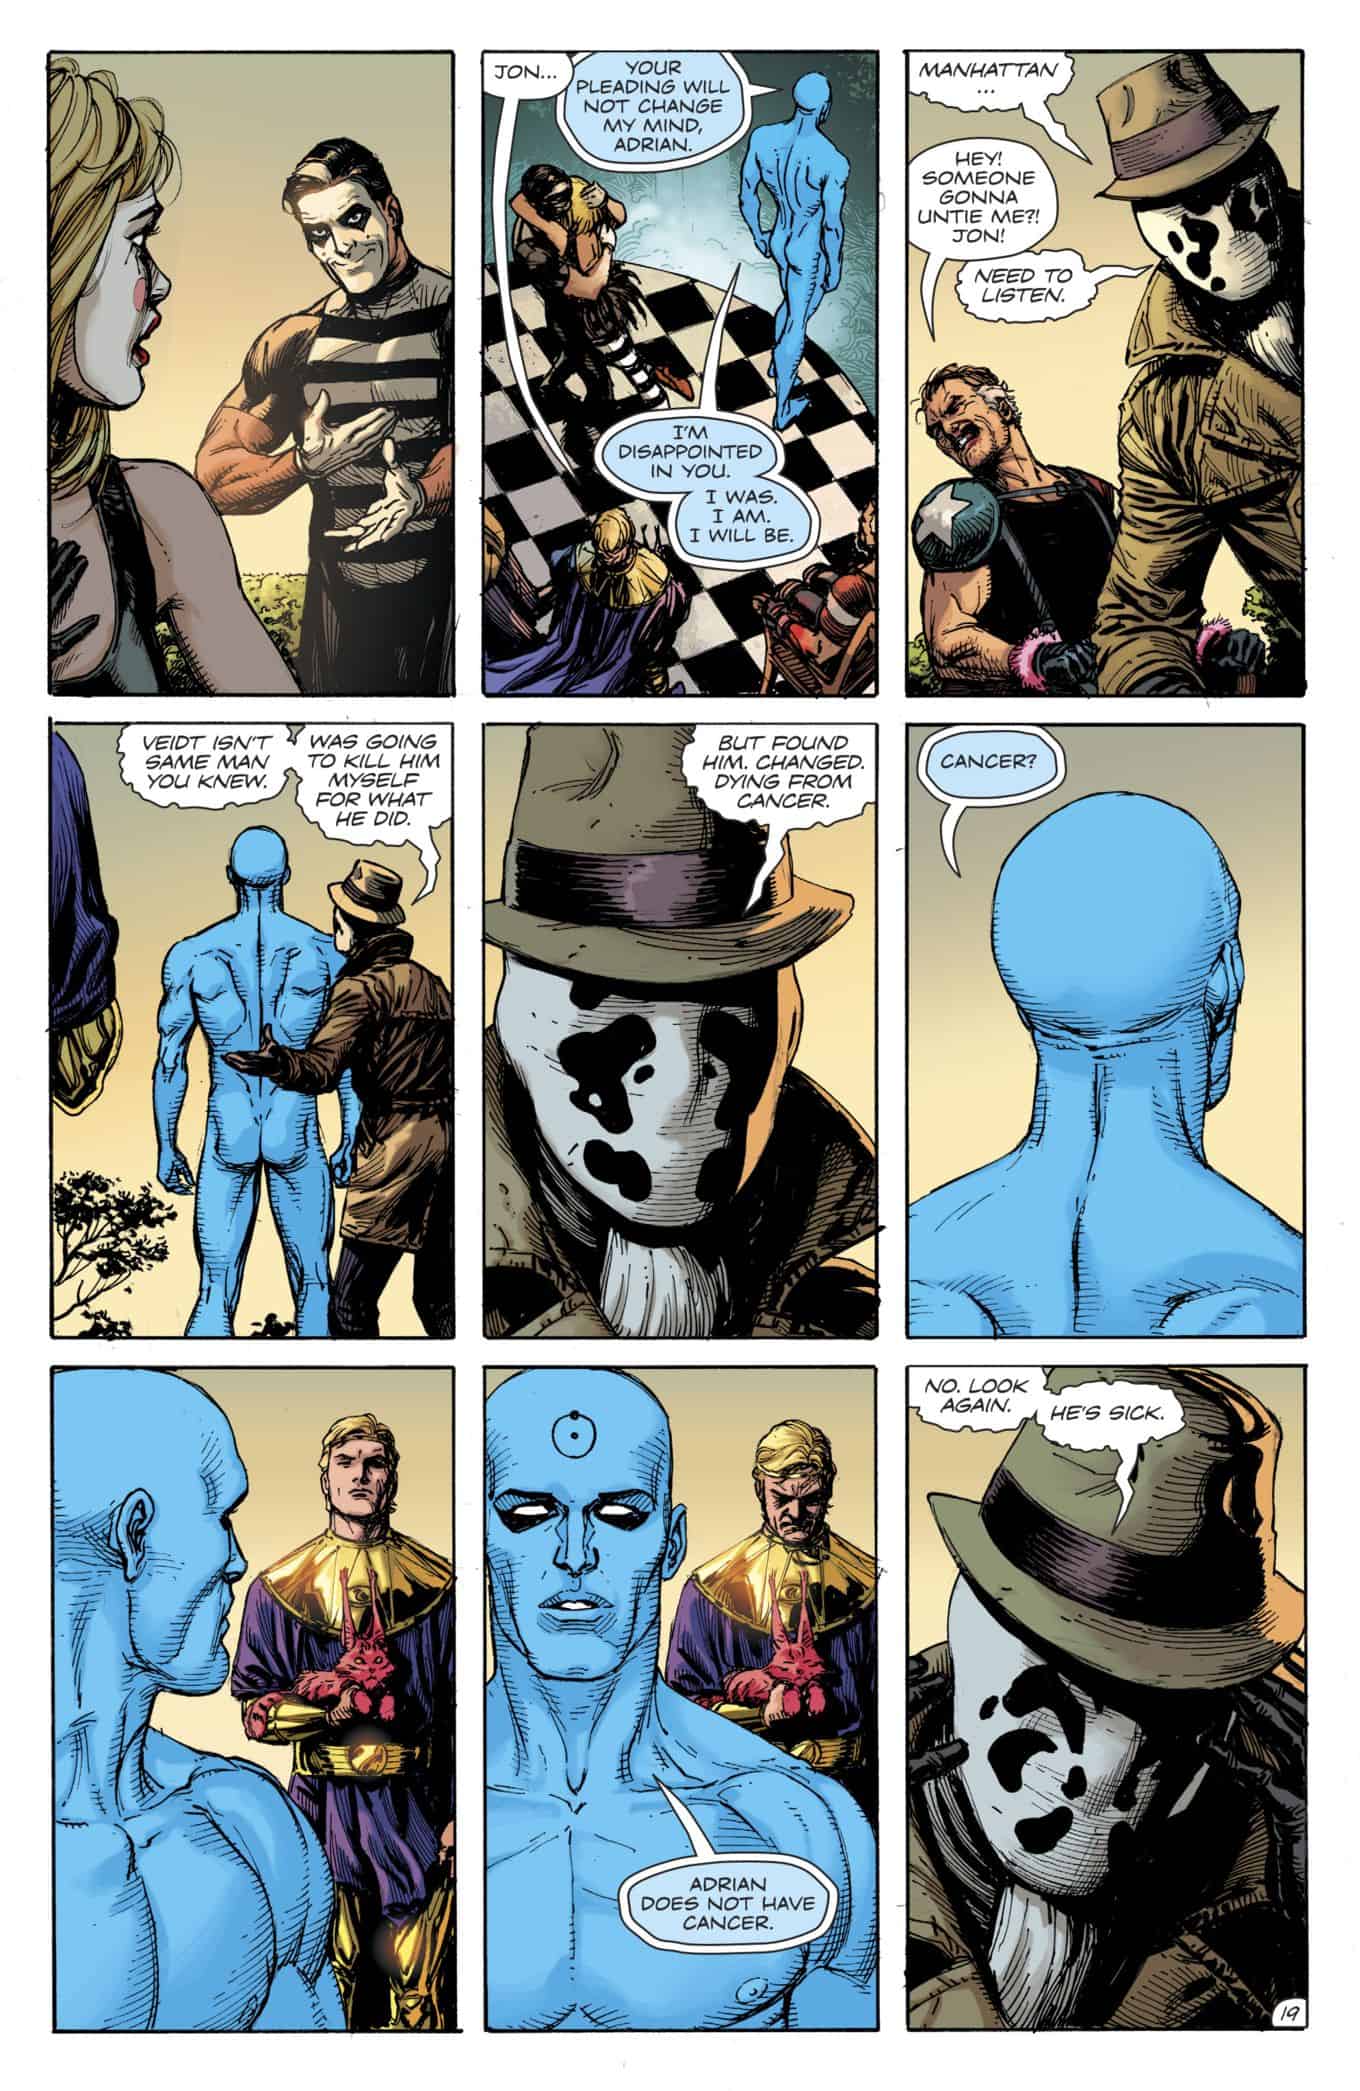 DC Comics Universe & Doomsday Clock #7 Spoilers: The Watchmen’s Doctor Manhattan ...1988 x 3056